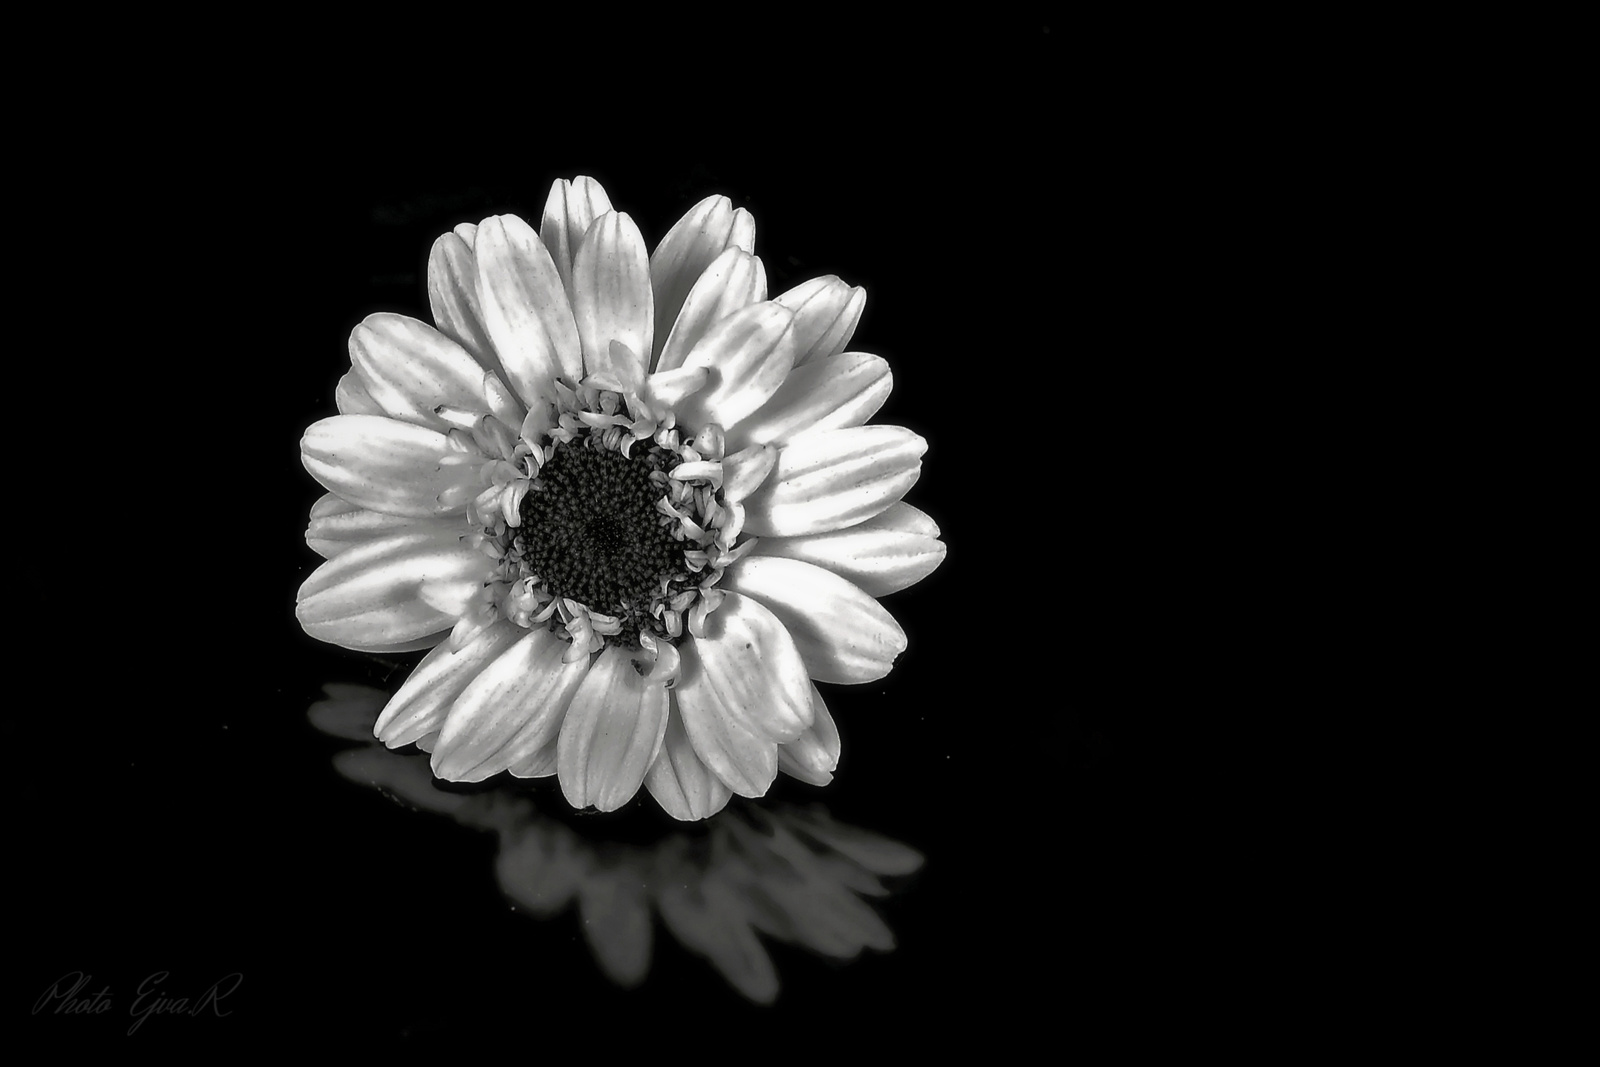 Virág feketén fehéren